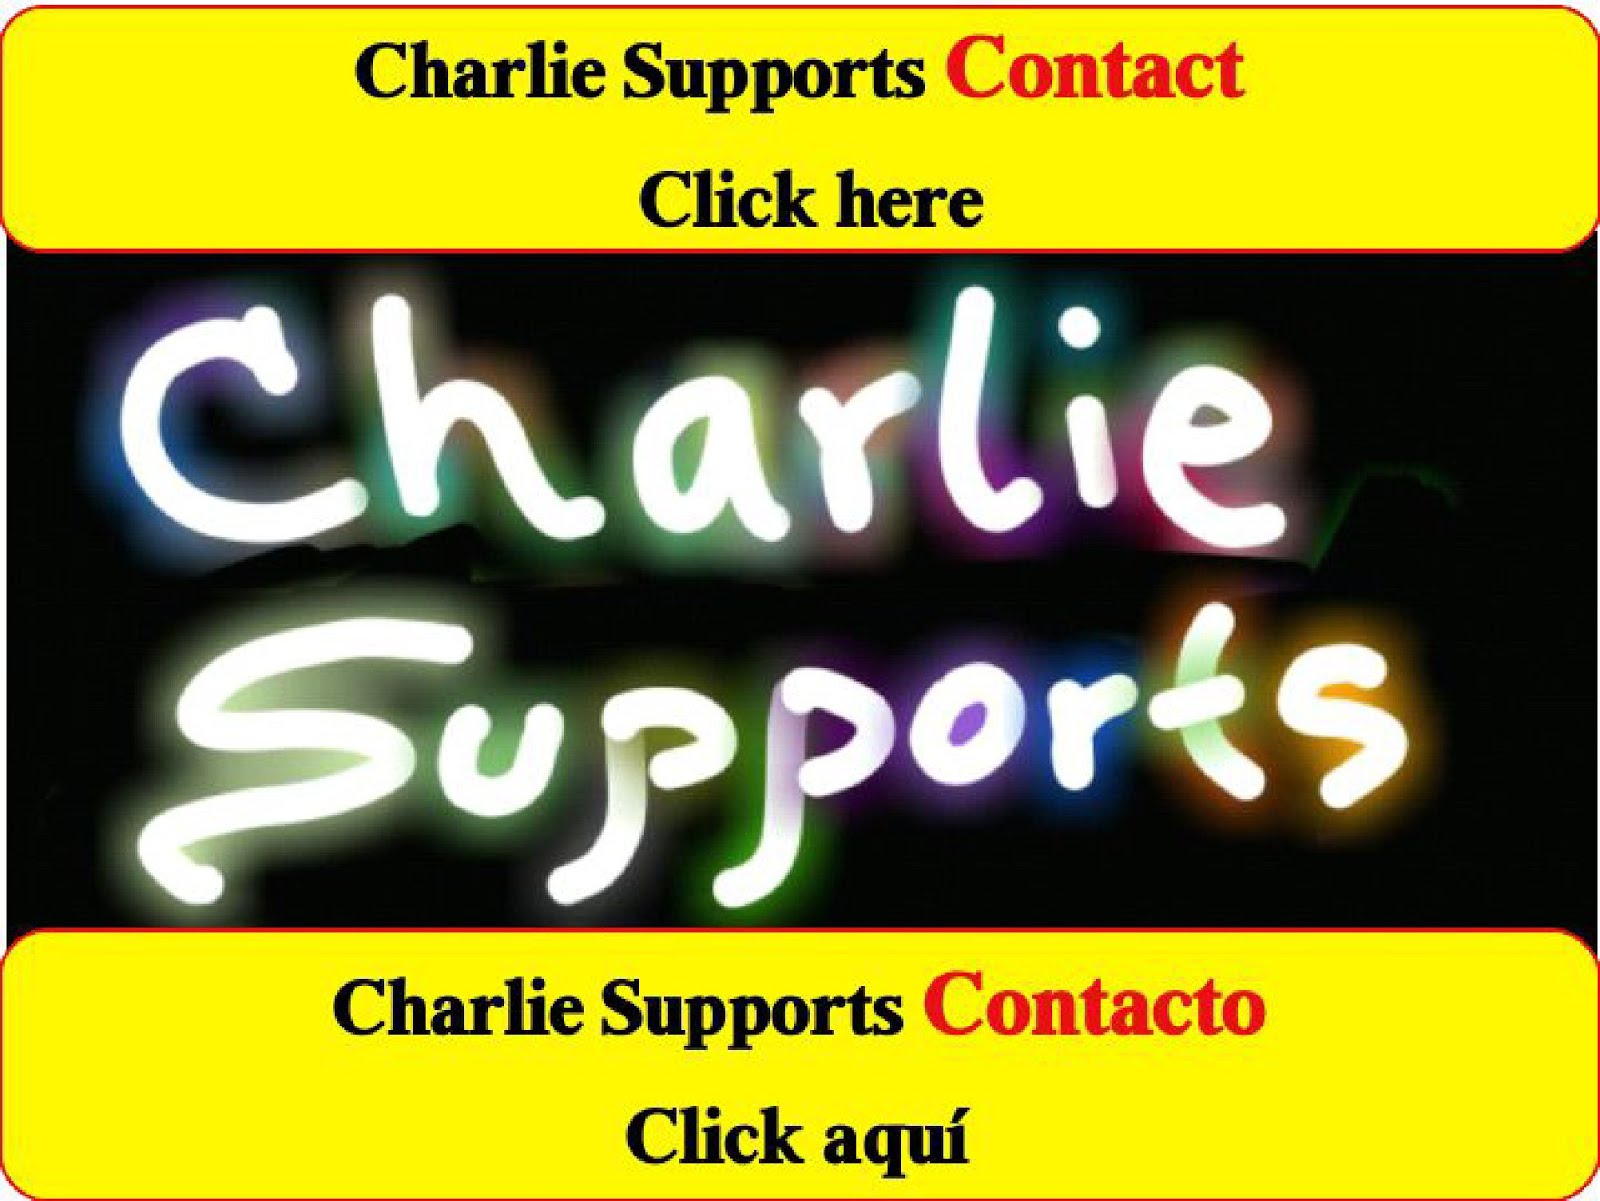 Charlie Supports Contact here: esttufacil@esttufacil.com